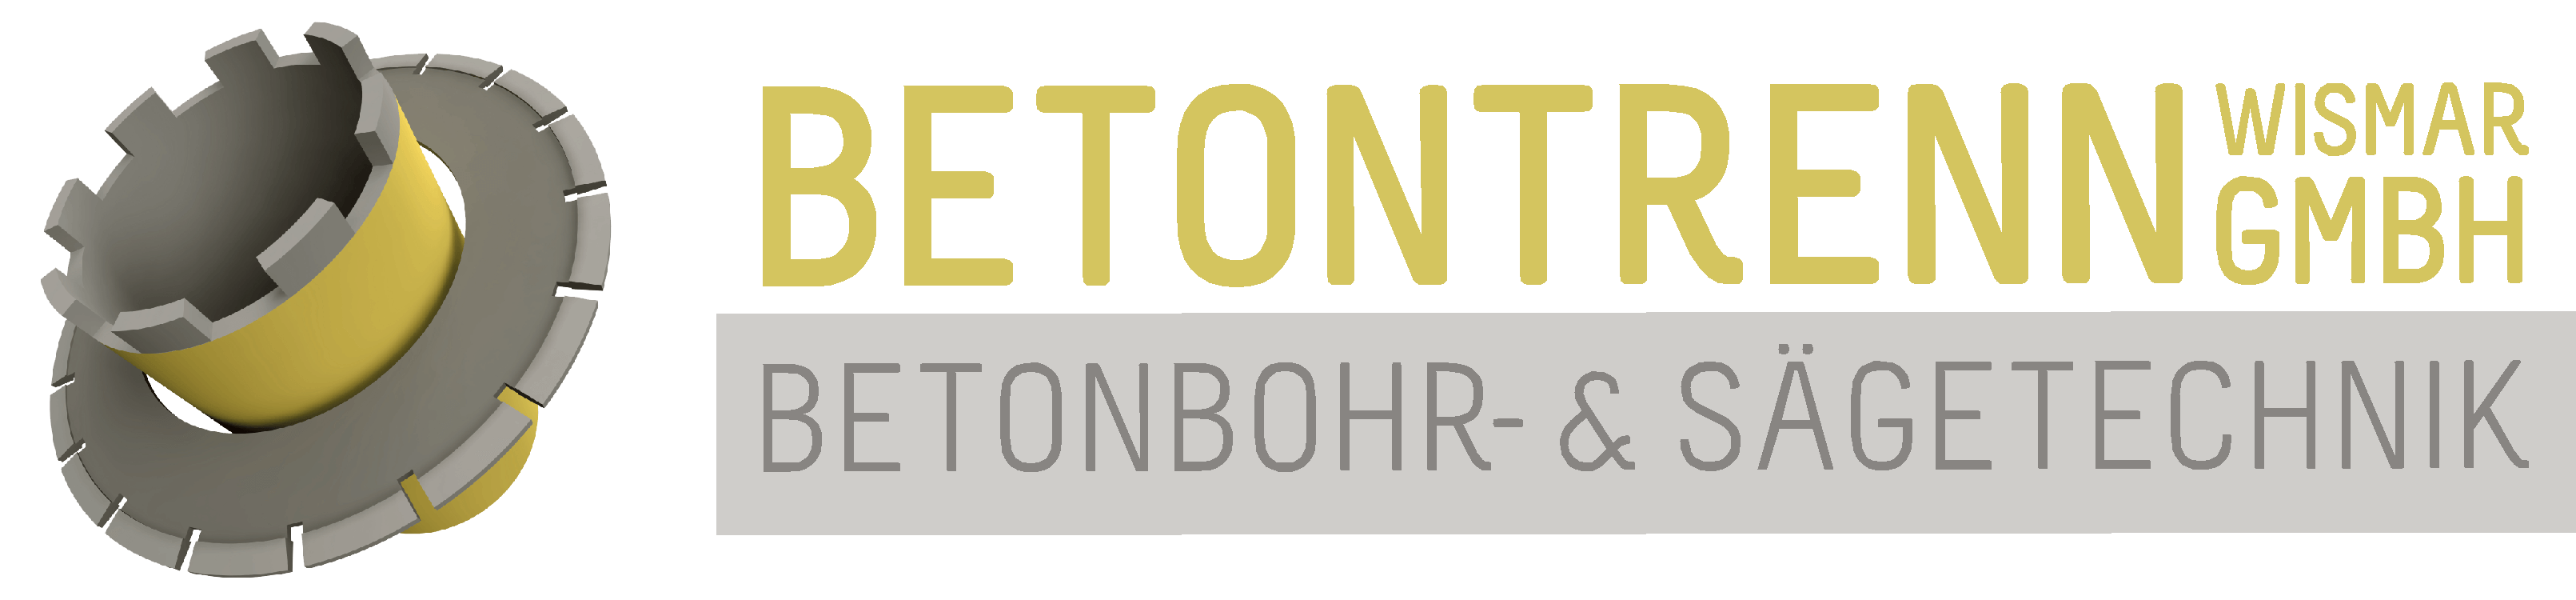 Betontrenn Wismar GmbH - Betonbohr- & Sägetechnik